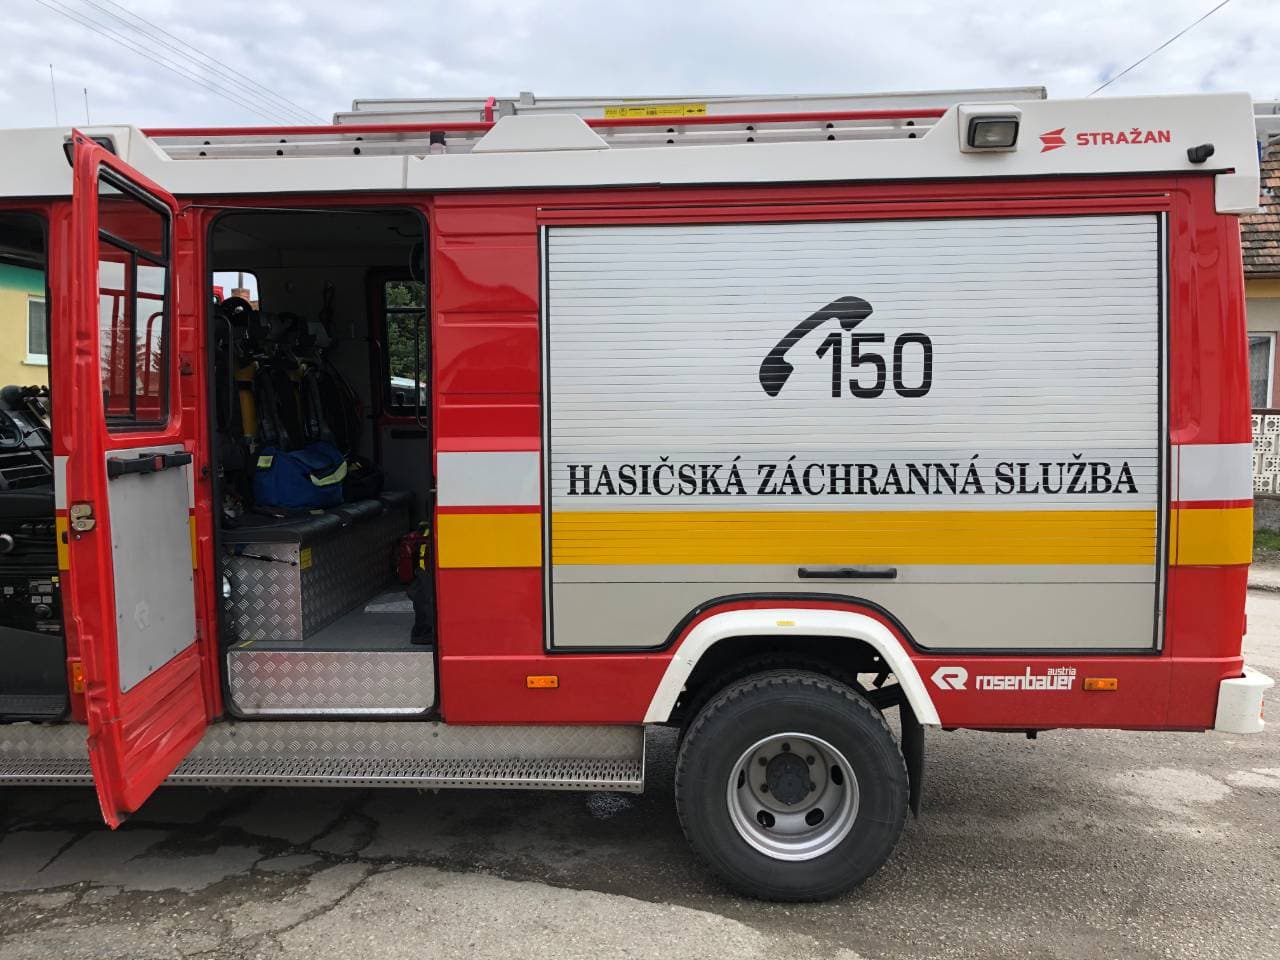 Autótűzhöz riasztották a tűzoltókat Dunaszerdahelyen, de szerencsére a látszat csalt